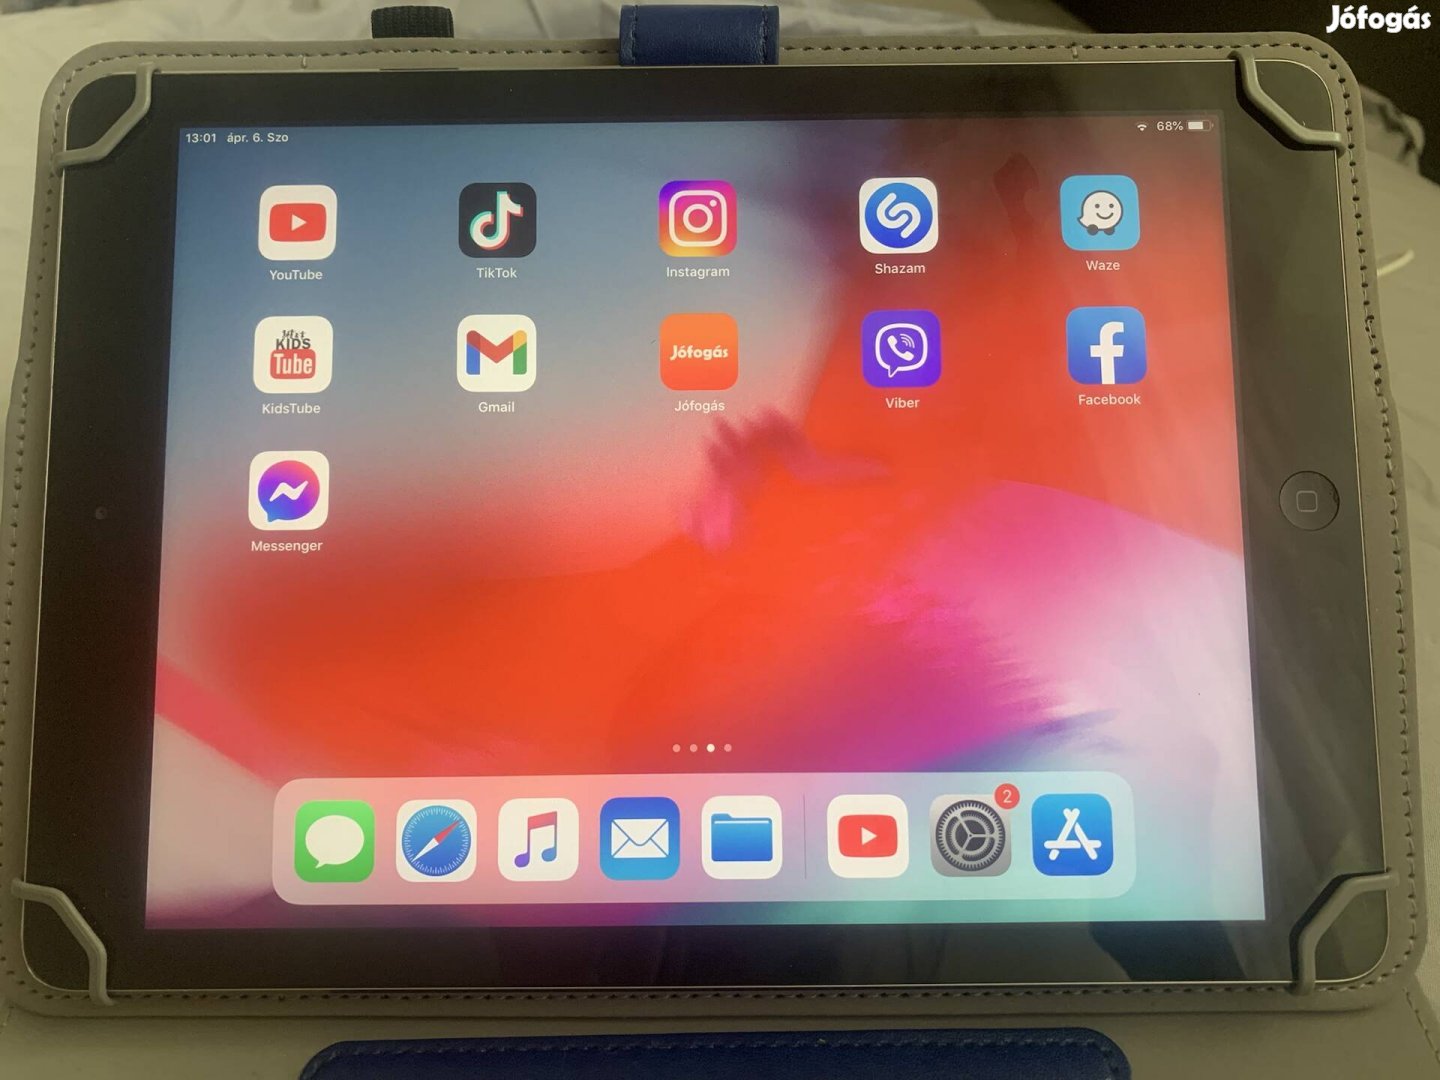 Eladó Ipad Air tablet 32GB sérülés mentes, karc mentes